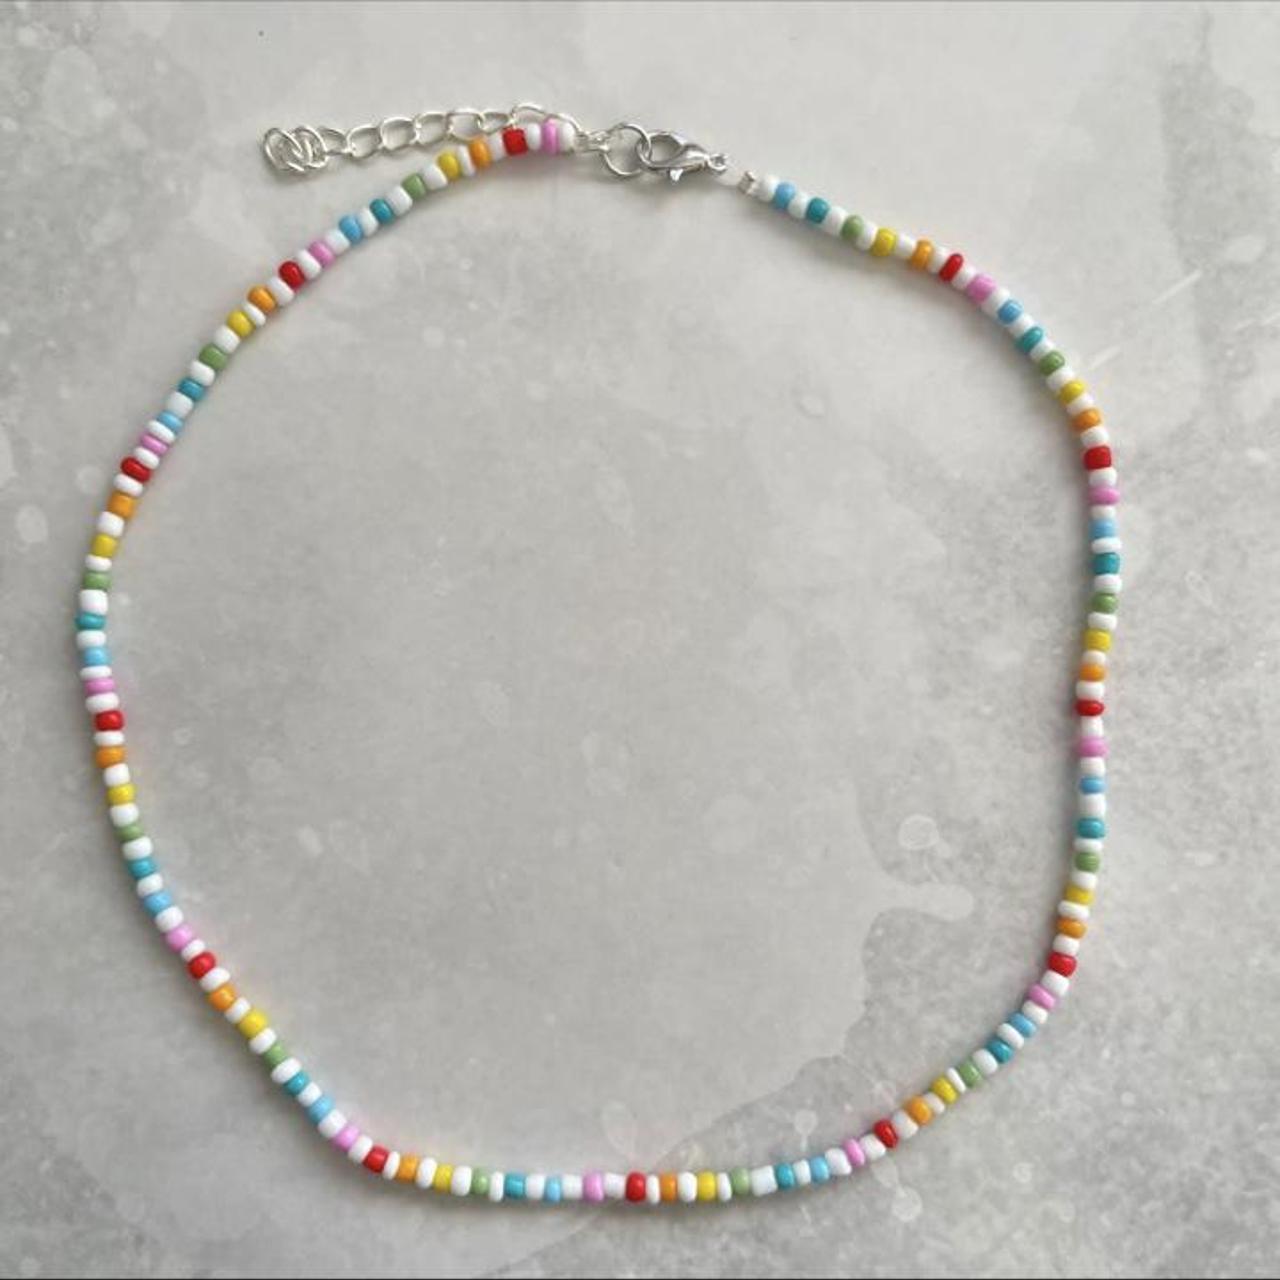 Product Image 2 - Rainbow beaded necklace 
Gorgeous rainbow